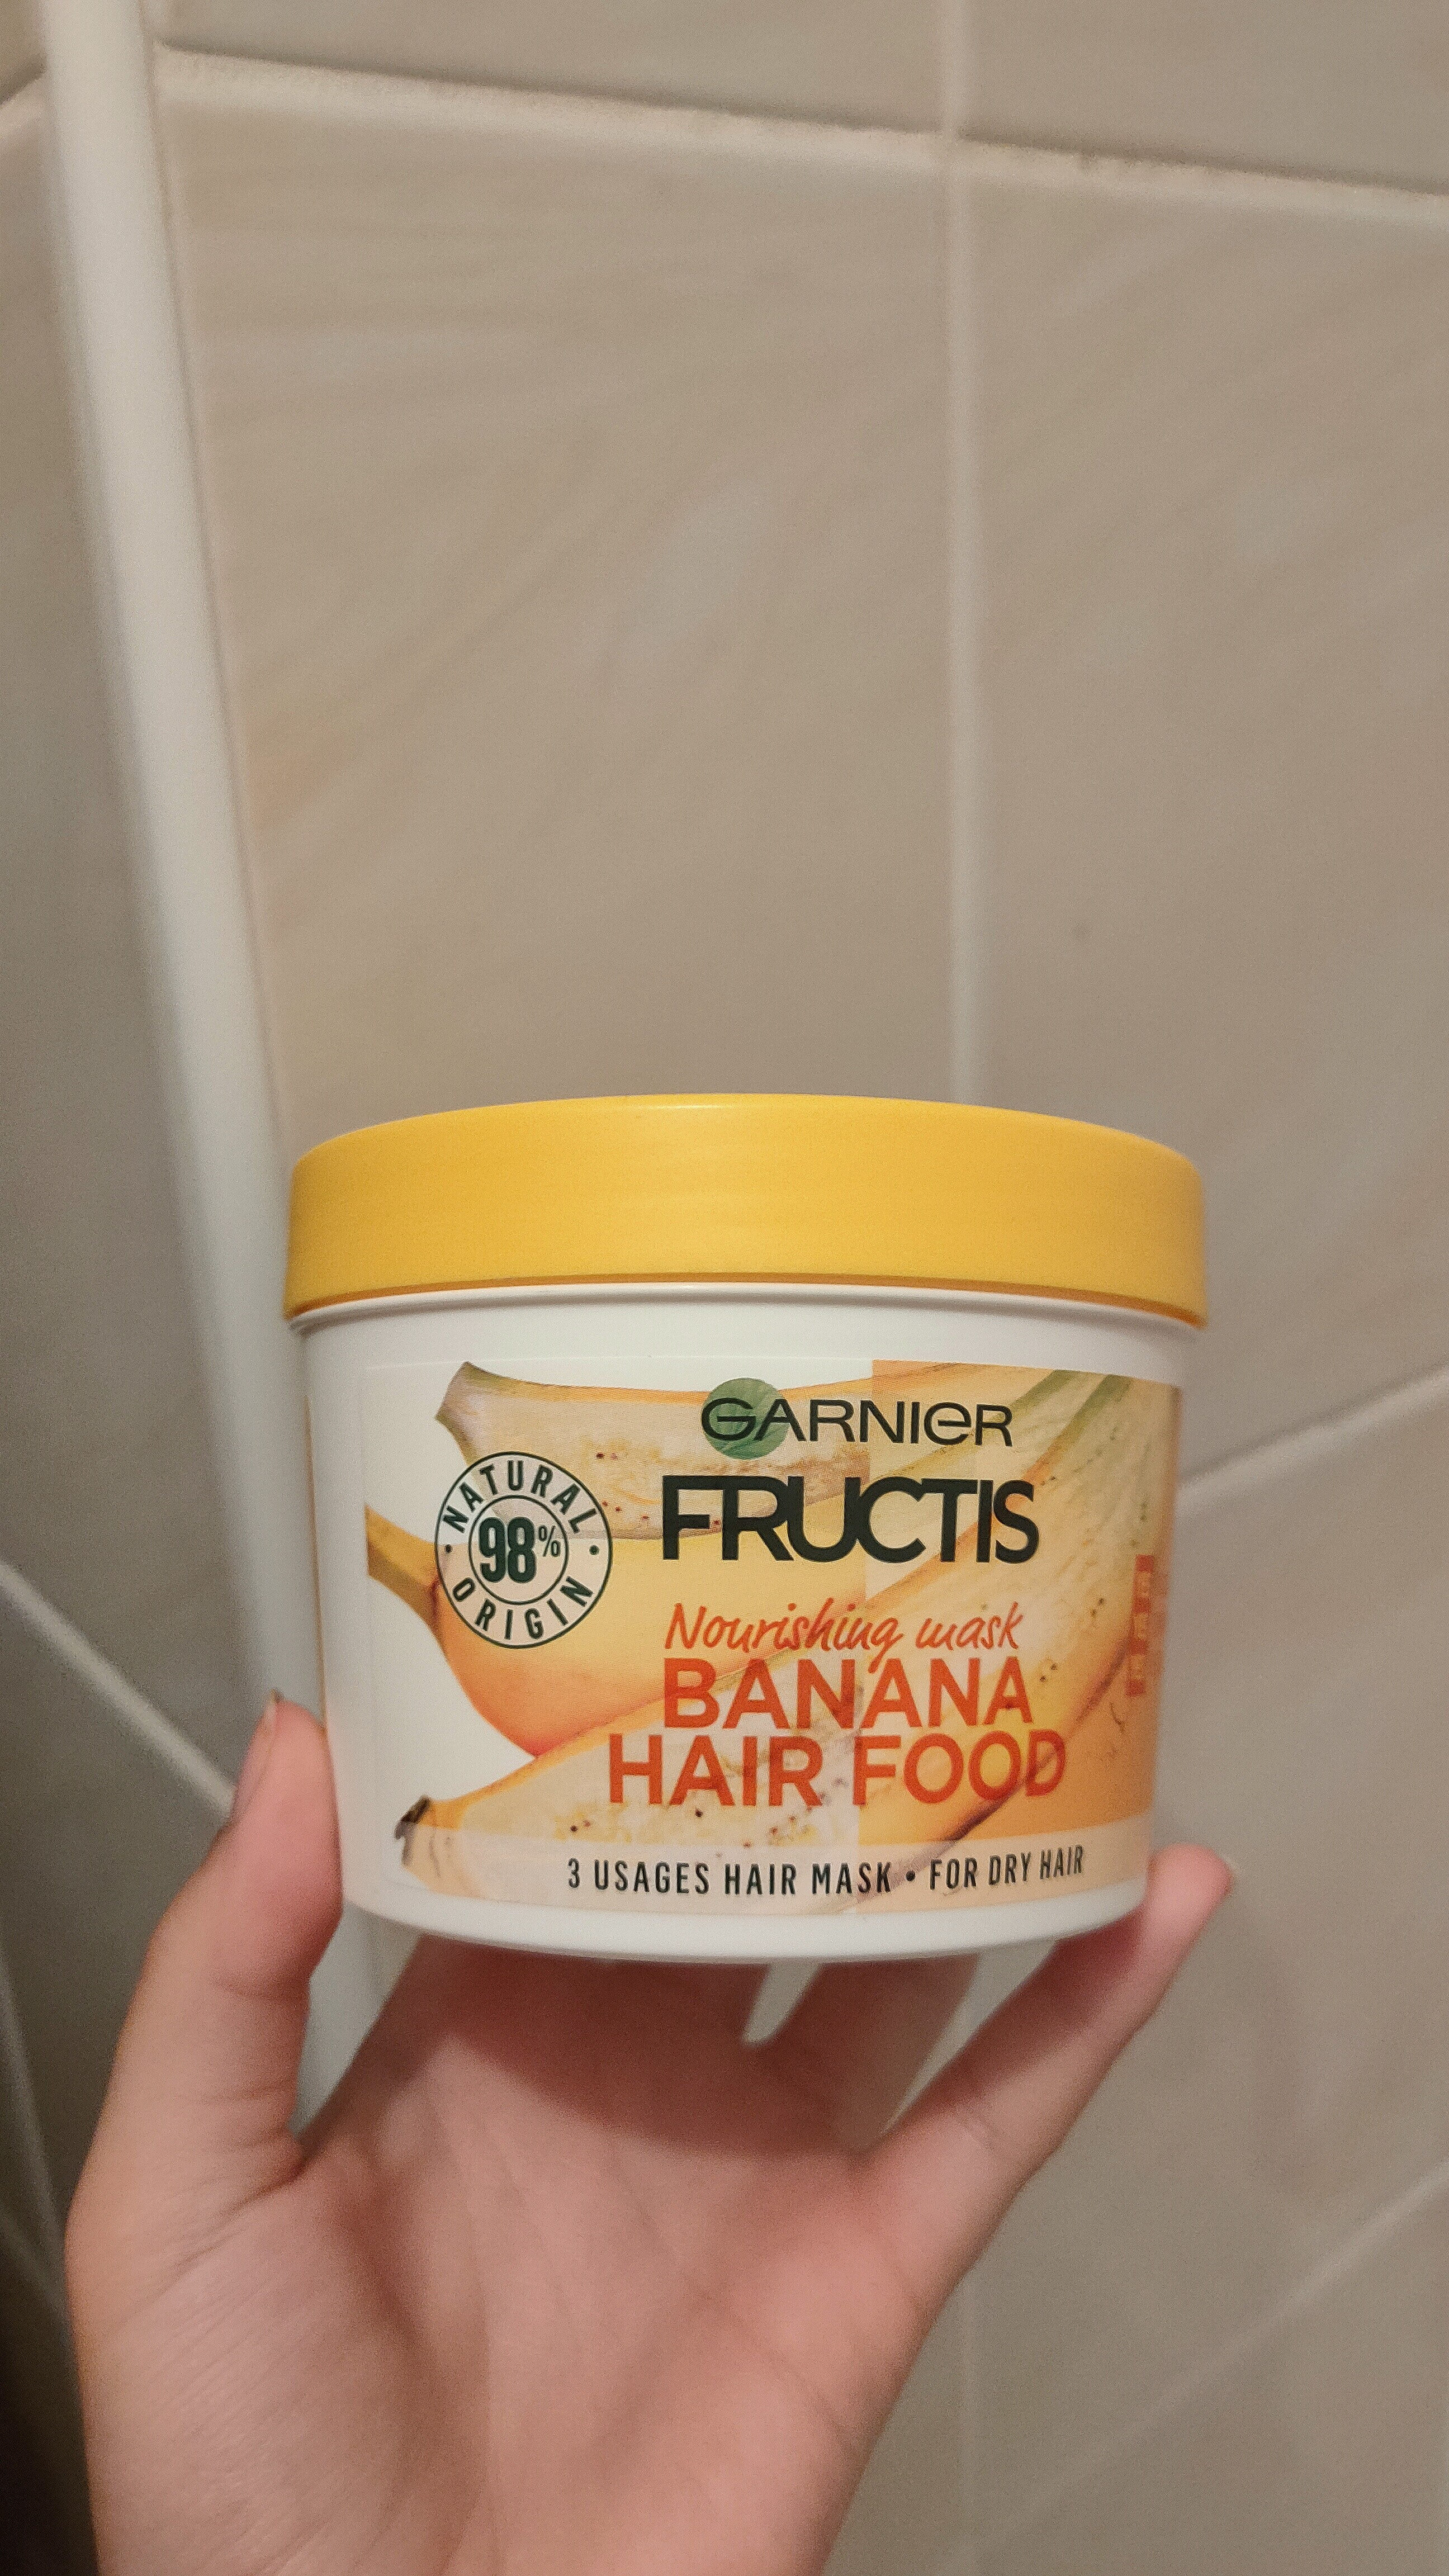 Banana hair food - Tuote - hr